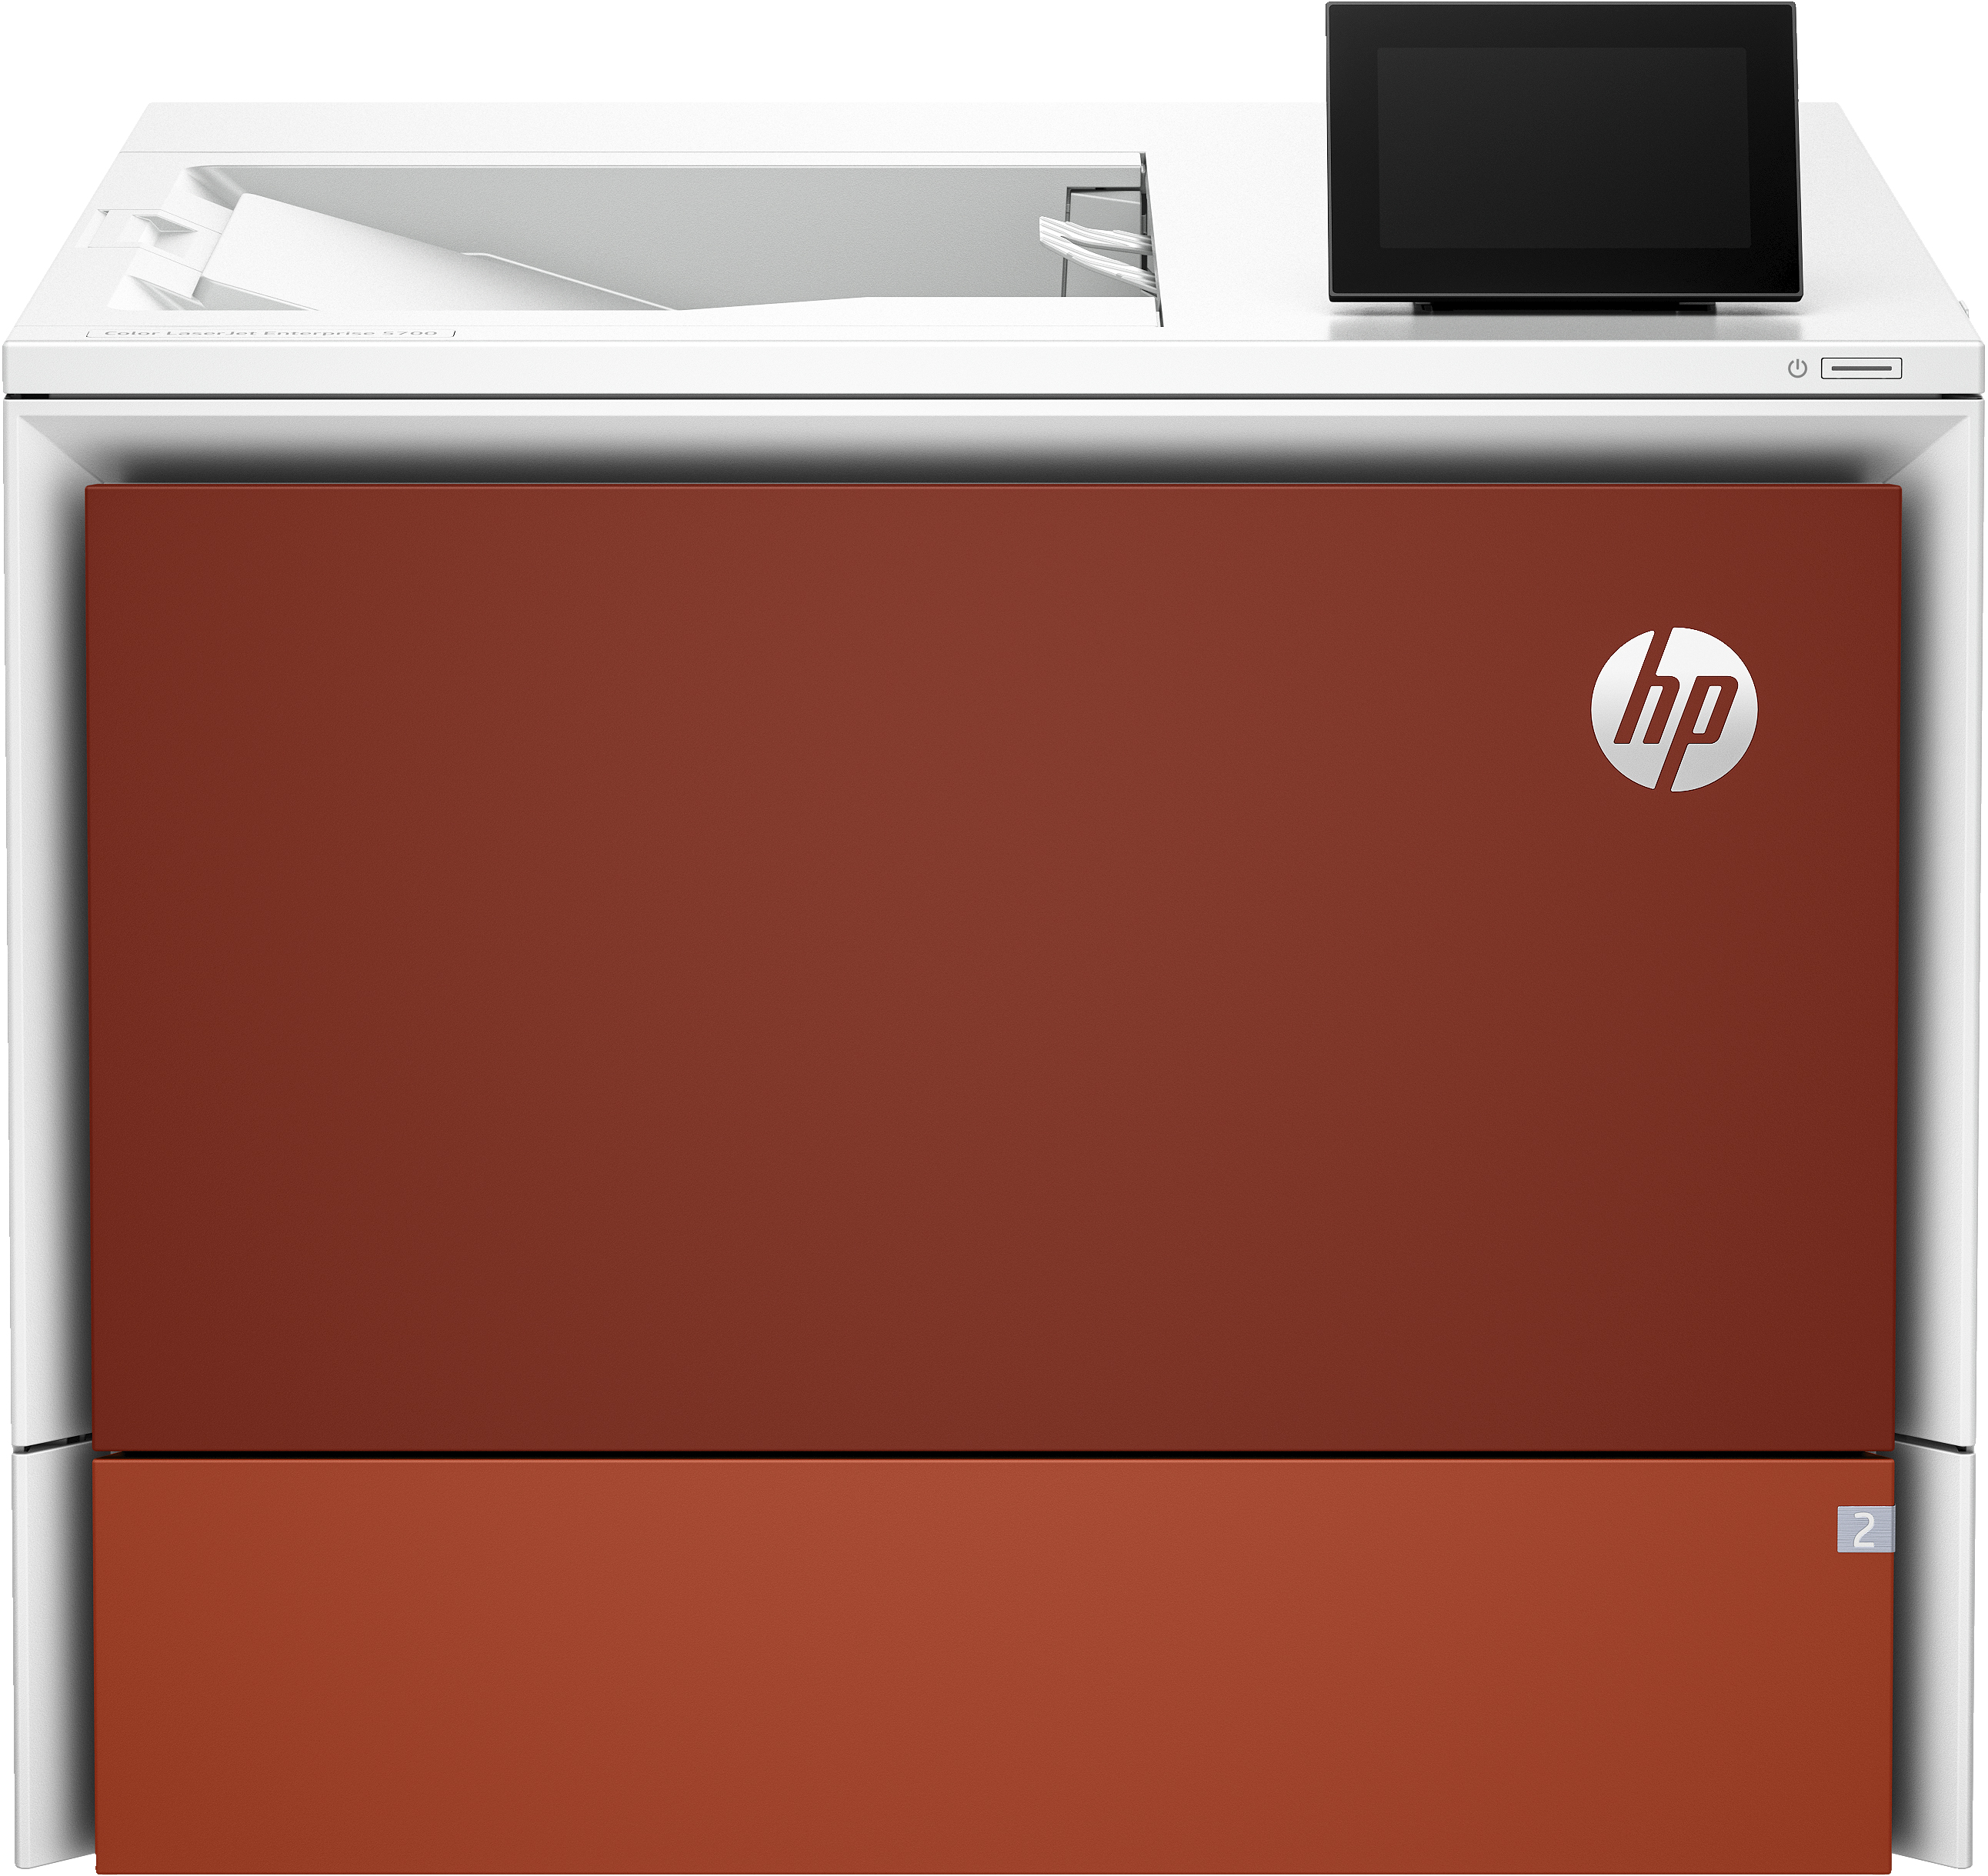 HP Color LaserJet Enterprise Imprimante 5700dn, Imprimer, Port avant pour lecteur Flash USB. Bacs haute capacité en option. Écran tactile. Cartouche TerraJet